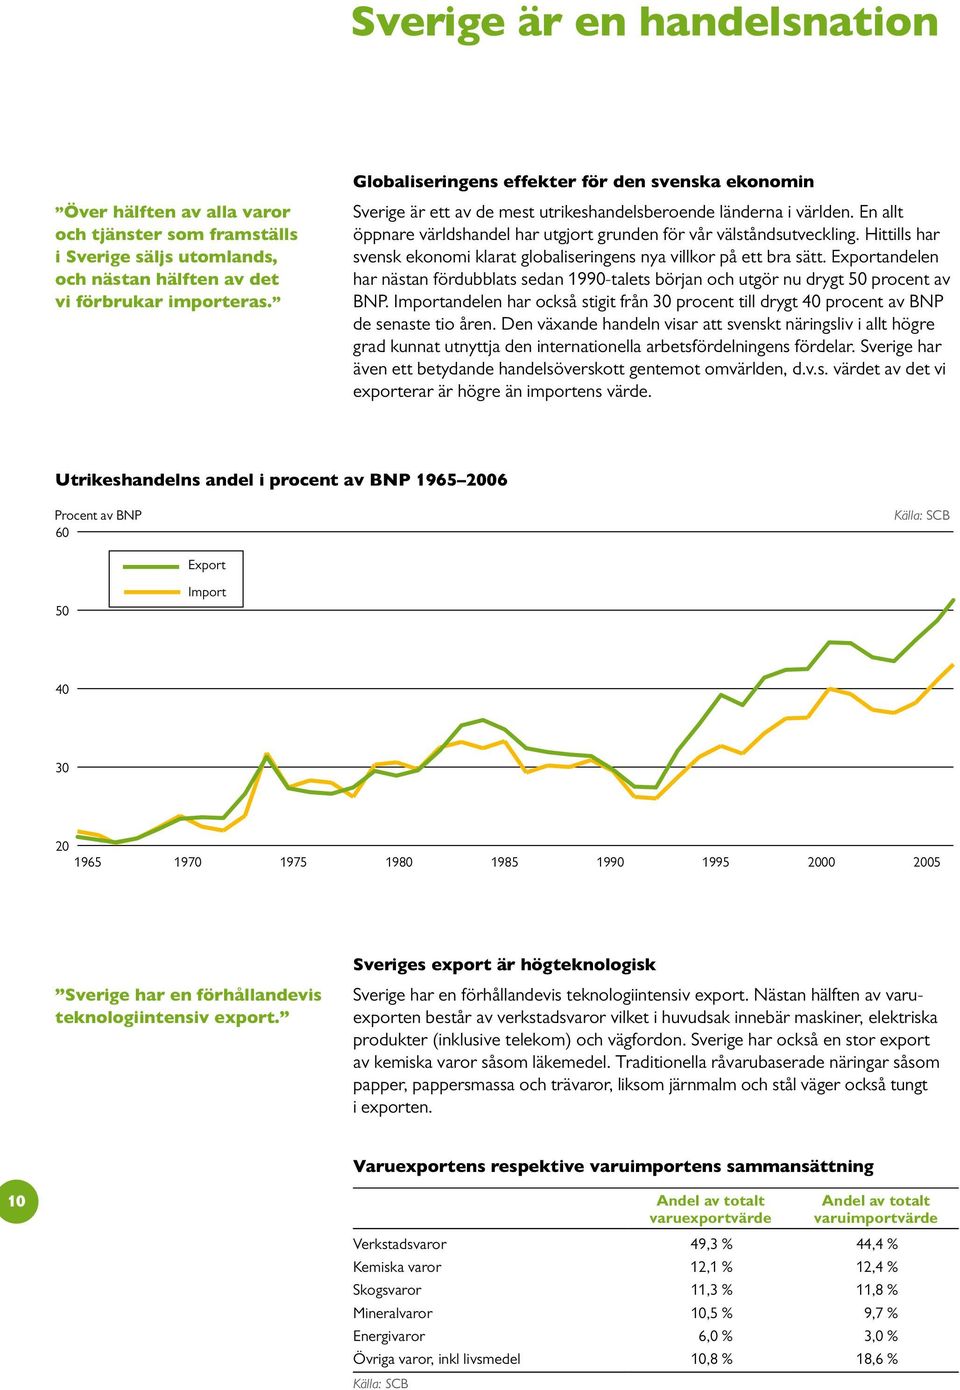 Hittills har svensk ekonomi klarat globaliseringens nya villkor på ett bra sätt. Exportandelen har nästan fördubblats sedan 1990-talets början och utgör nu drygt 50 procent av BNP.